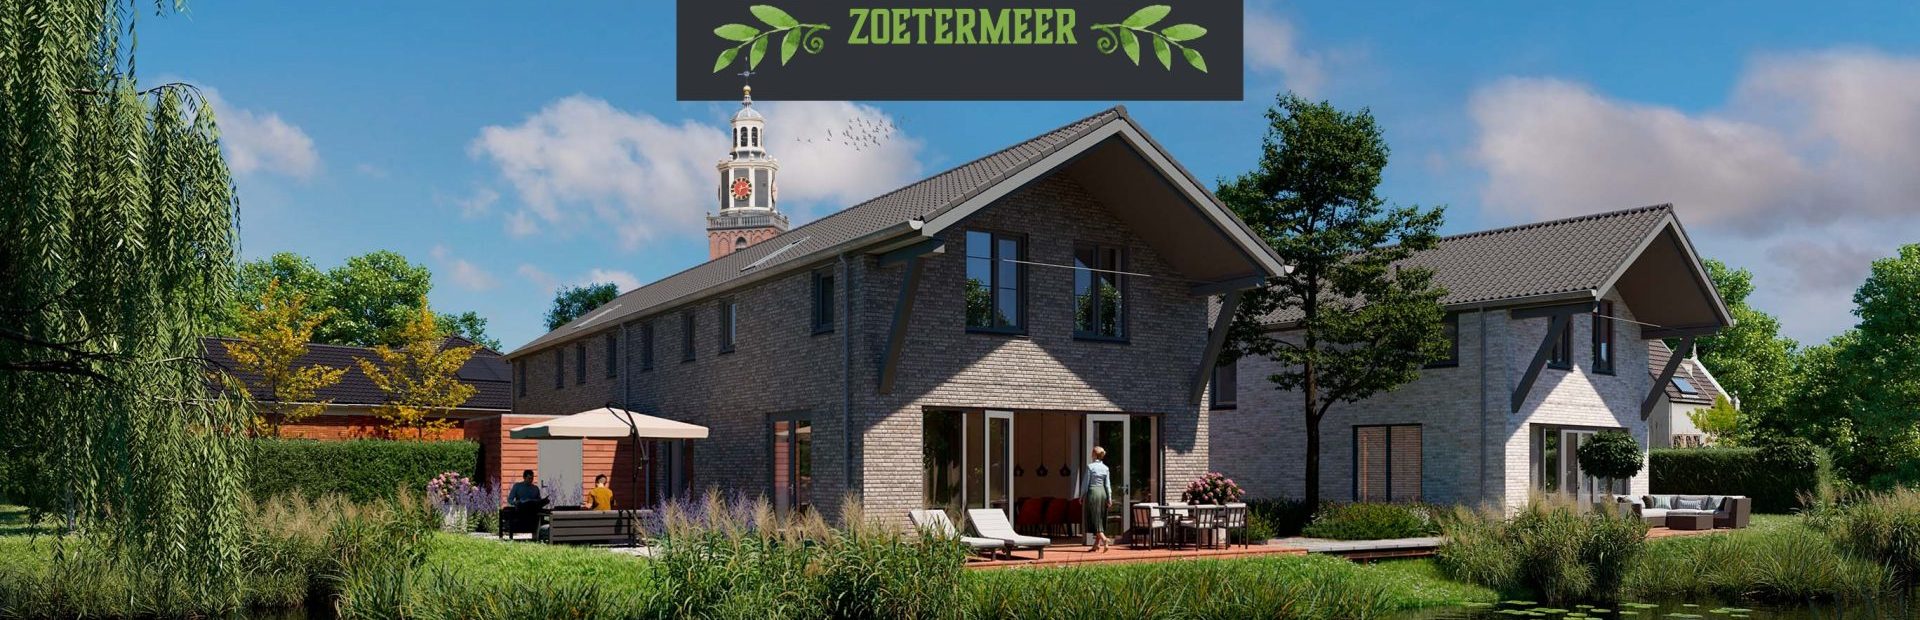 Website met woningzoeker, VR tour en drukwerk voor de start verkoop van Fittershof Zoetermeer